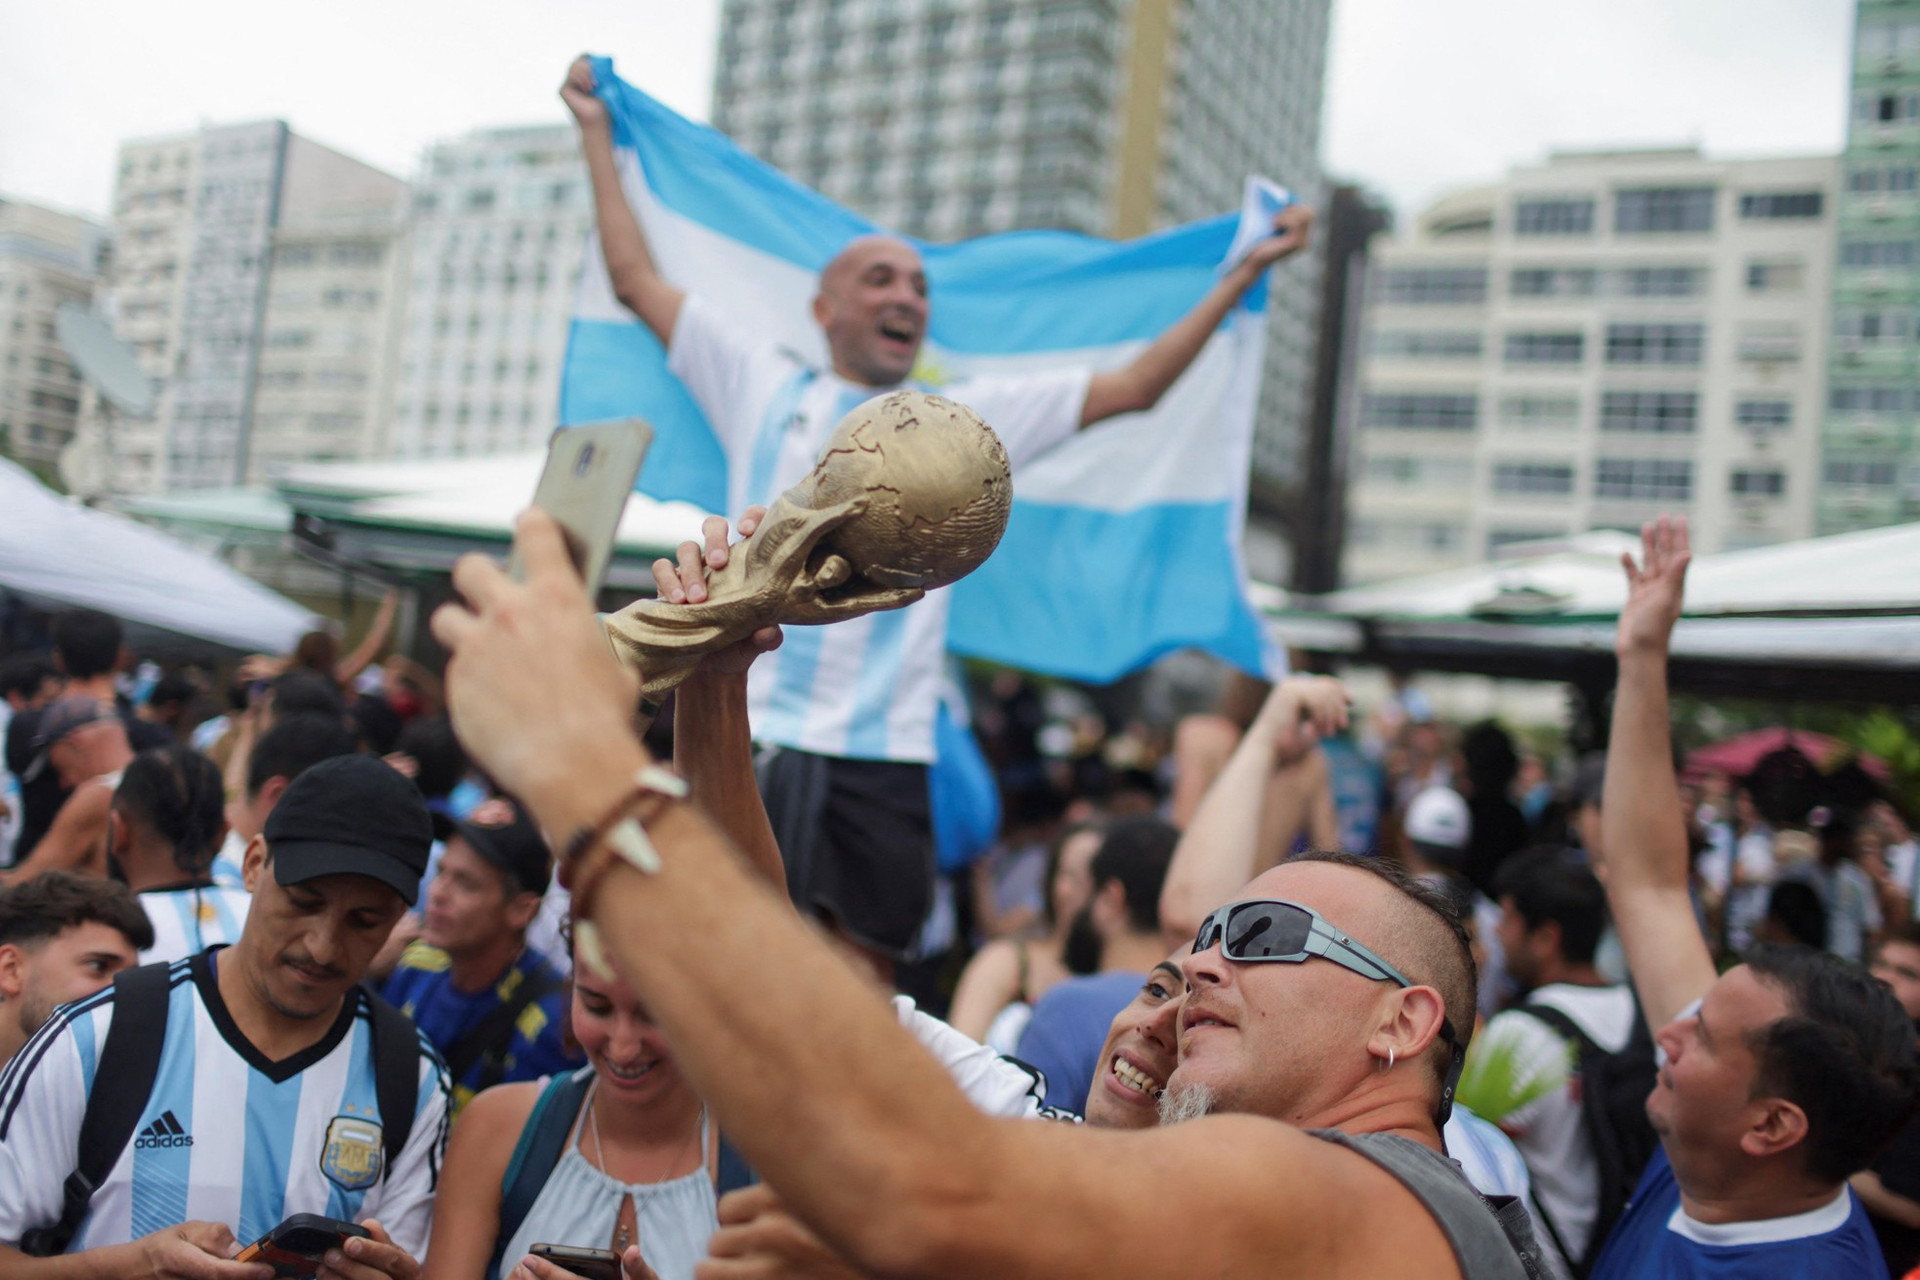 Thủ đô Argentina chìm trong mưa nước mắt vì hạnh phúc ảnh 13